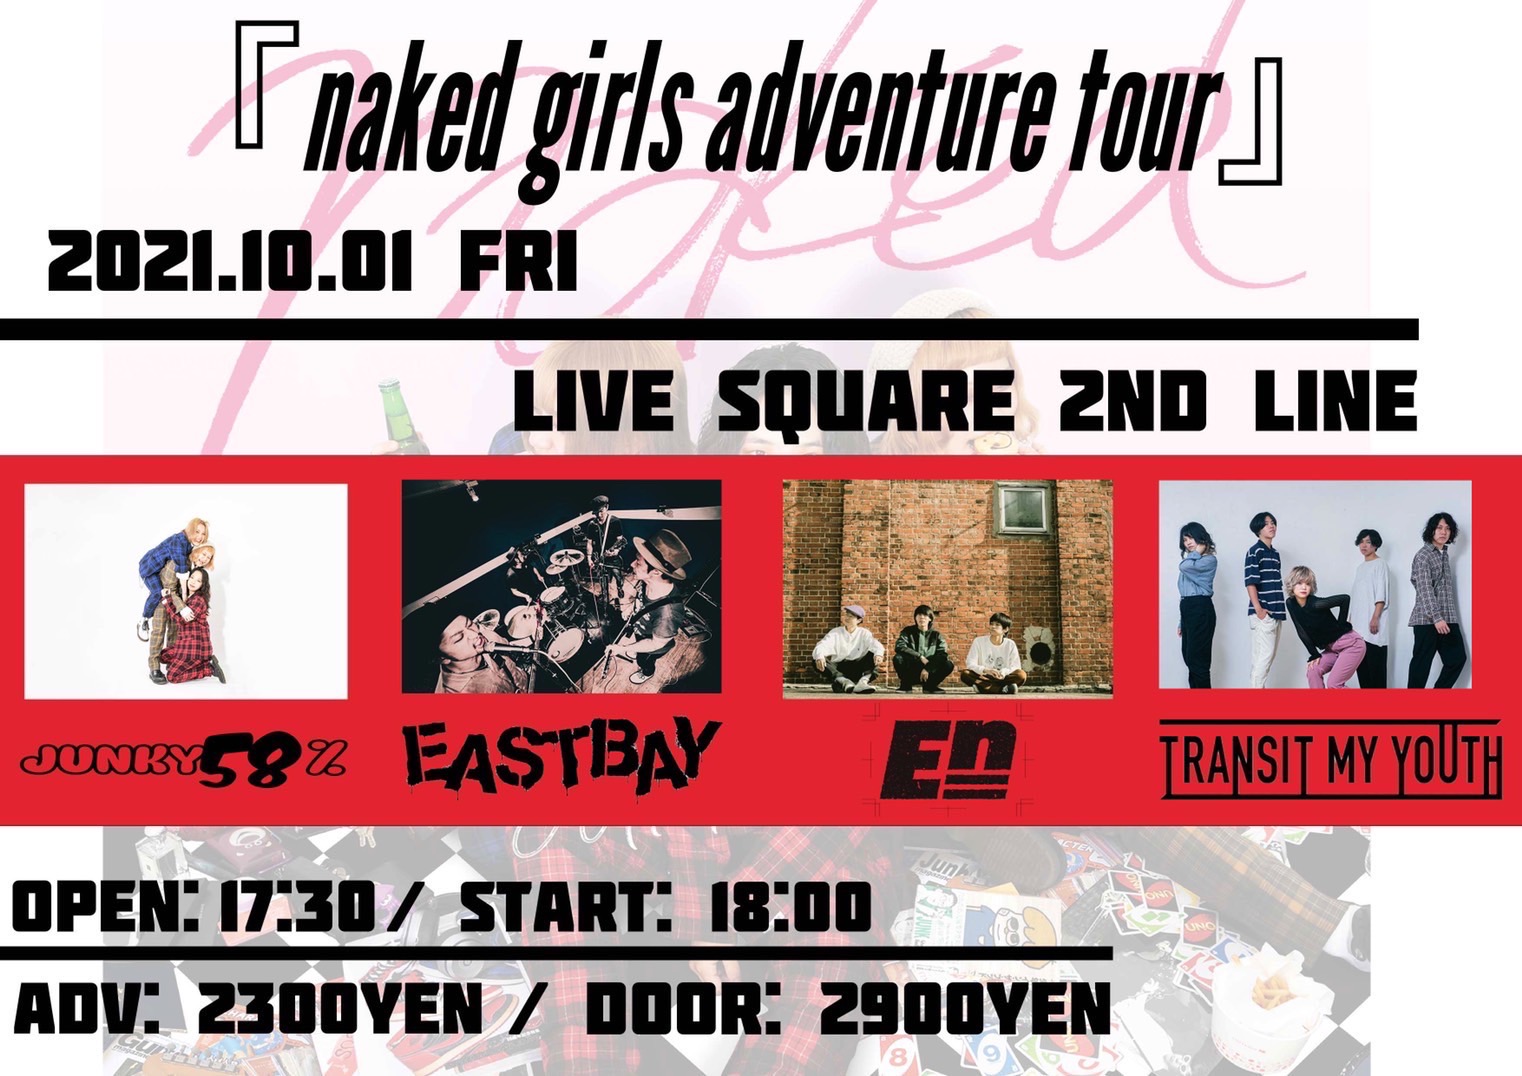 ジャンキー58% pre.「naked girls adventure tour」大阪編の写真